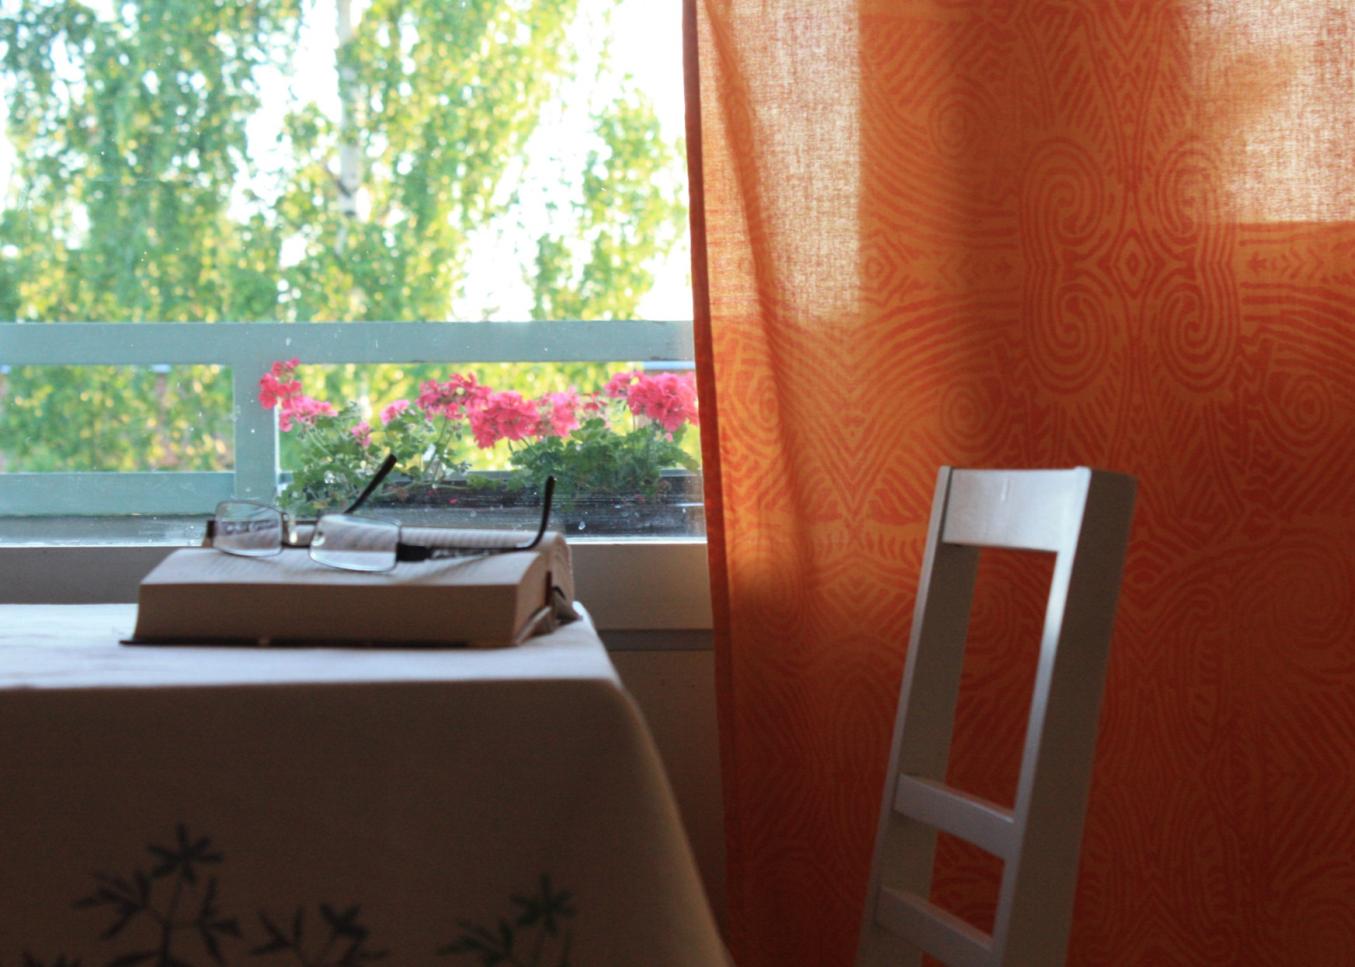 Vaalealla liinalla peitetty pöytä, jolla vanha kirja ja sen päällä silmälasit. Taustalla ikkuna josta näkyy vihreä kesämaisema. Ikkunassa kirkkaan oranssit verhot.